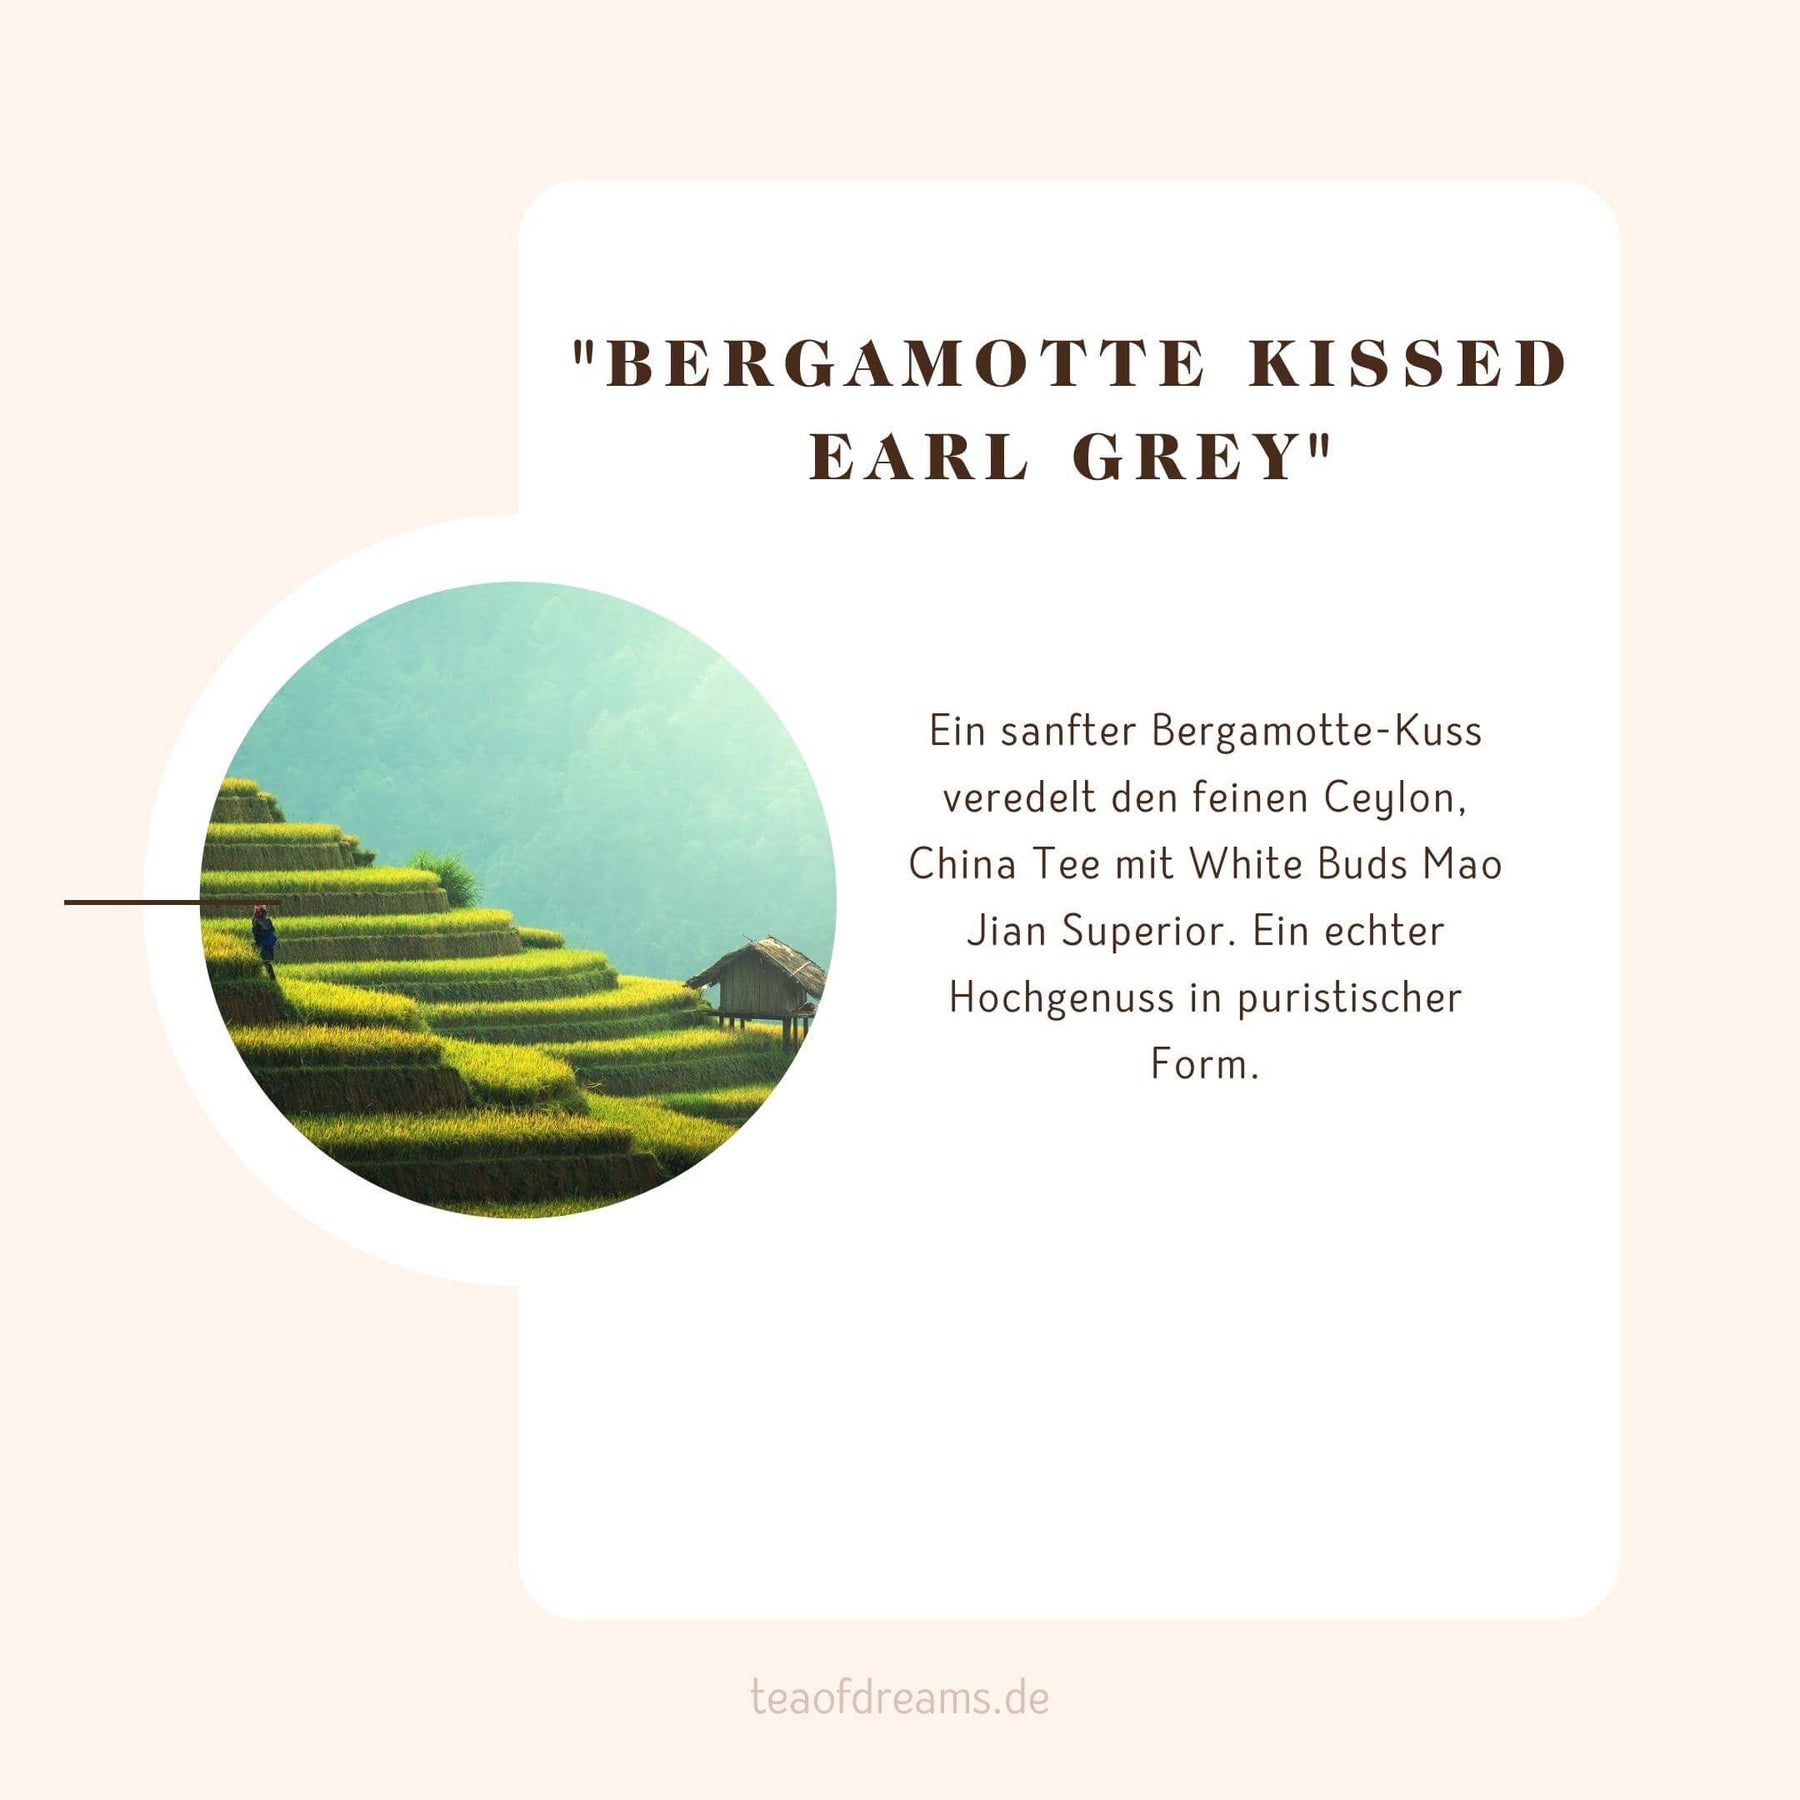 Bio Early Grey Tee "Bergamotte kissed Earl Grey"